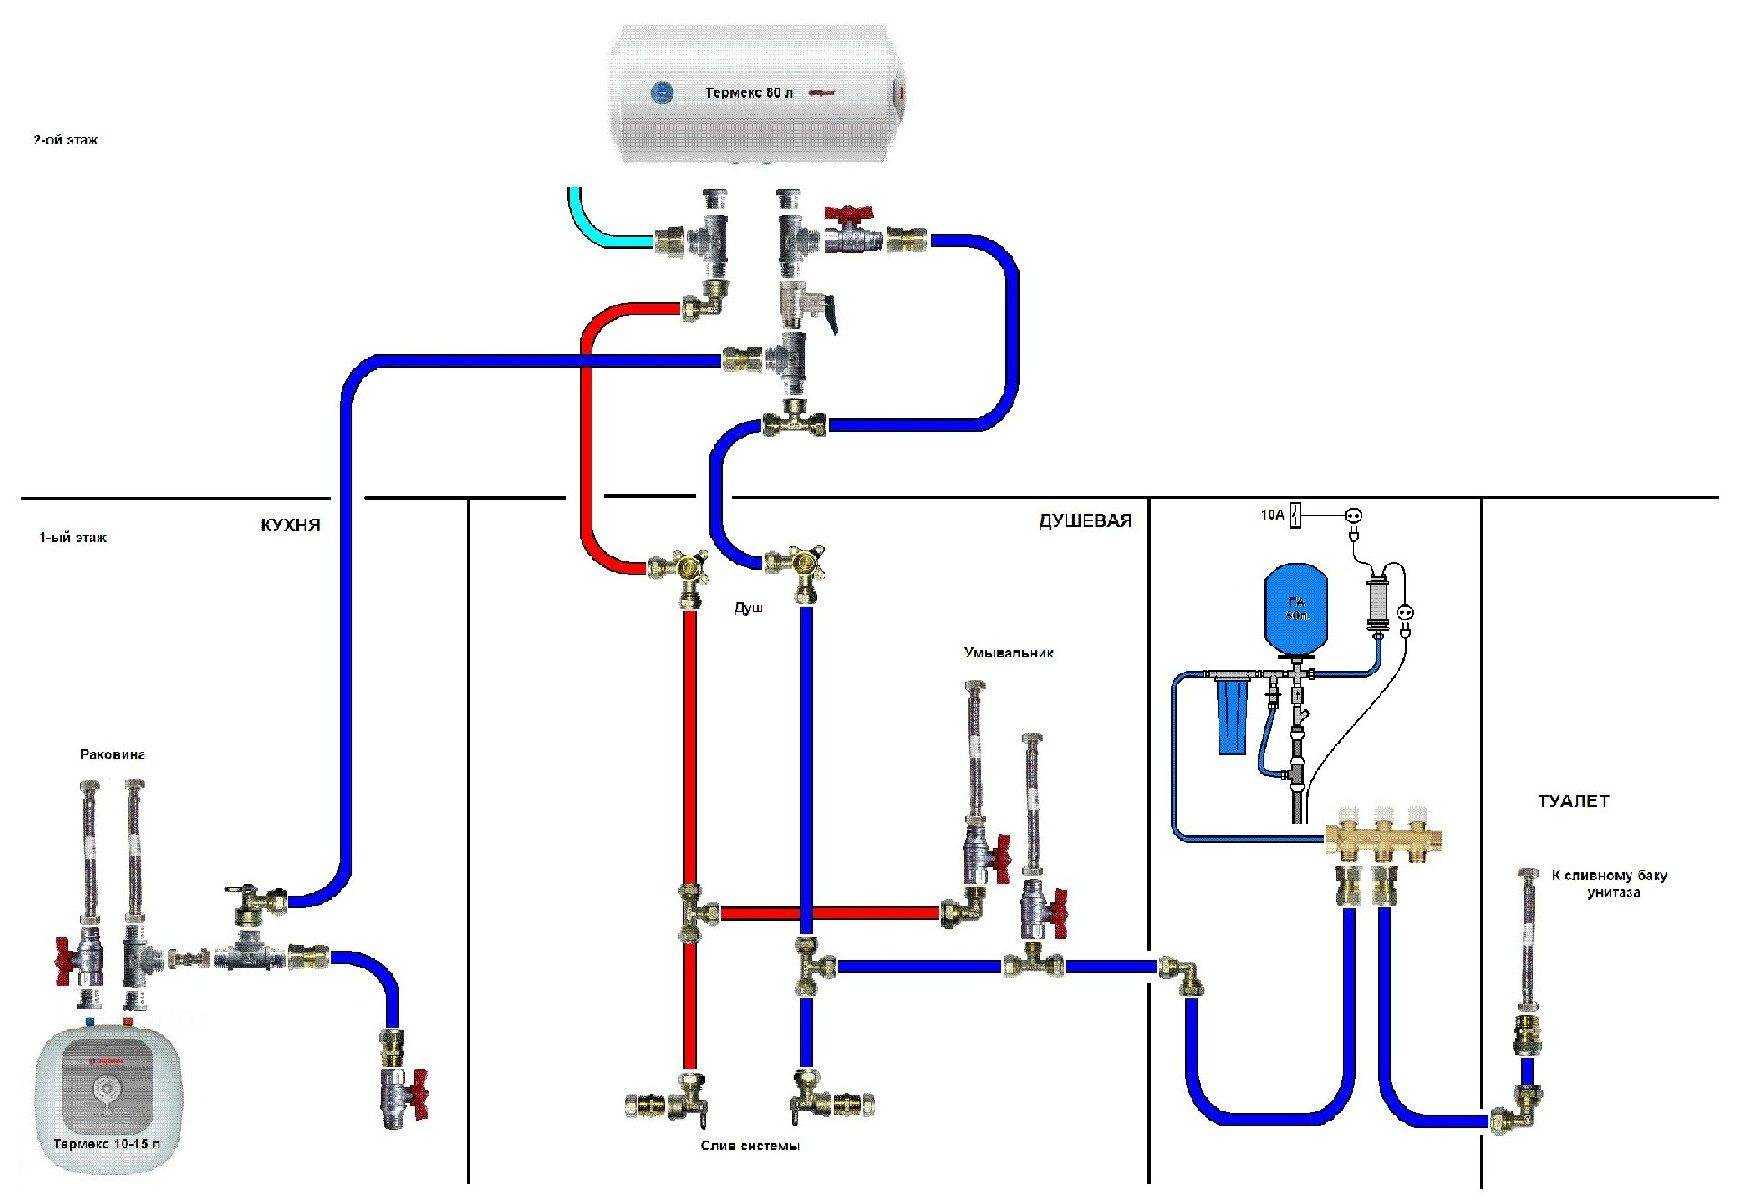 Подключение воды центрального водопровода. Схема подключения воды к центральному водопроводу. Схема коллектора водоснабжения с водонагревателем. Схема подключения водоснабжения трубопровода. Схема включения водонагревателя в систему водоснабжения чертеж.